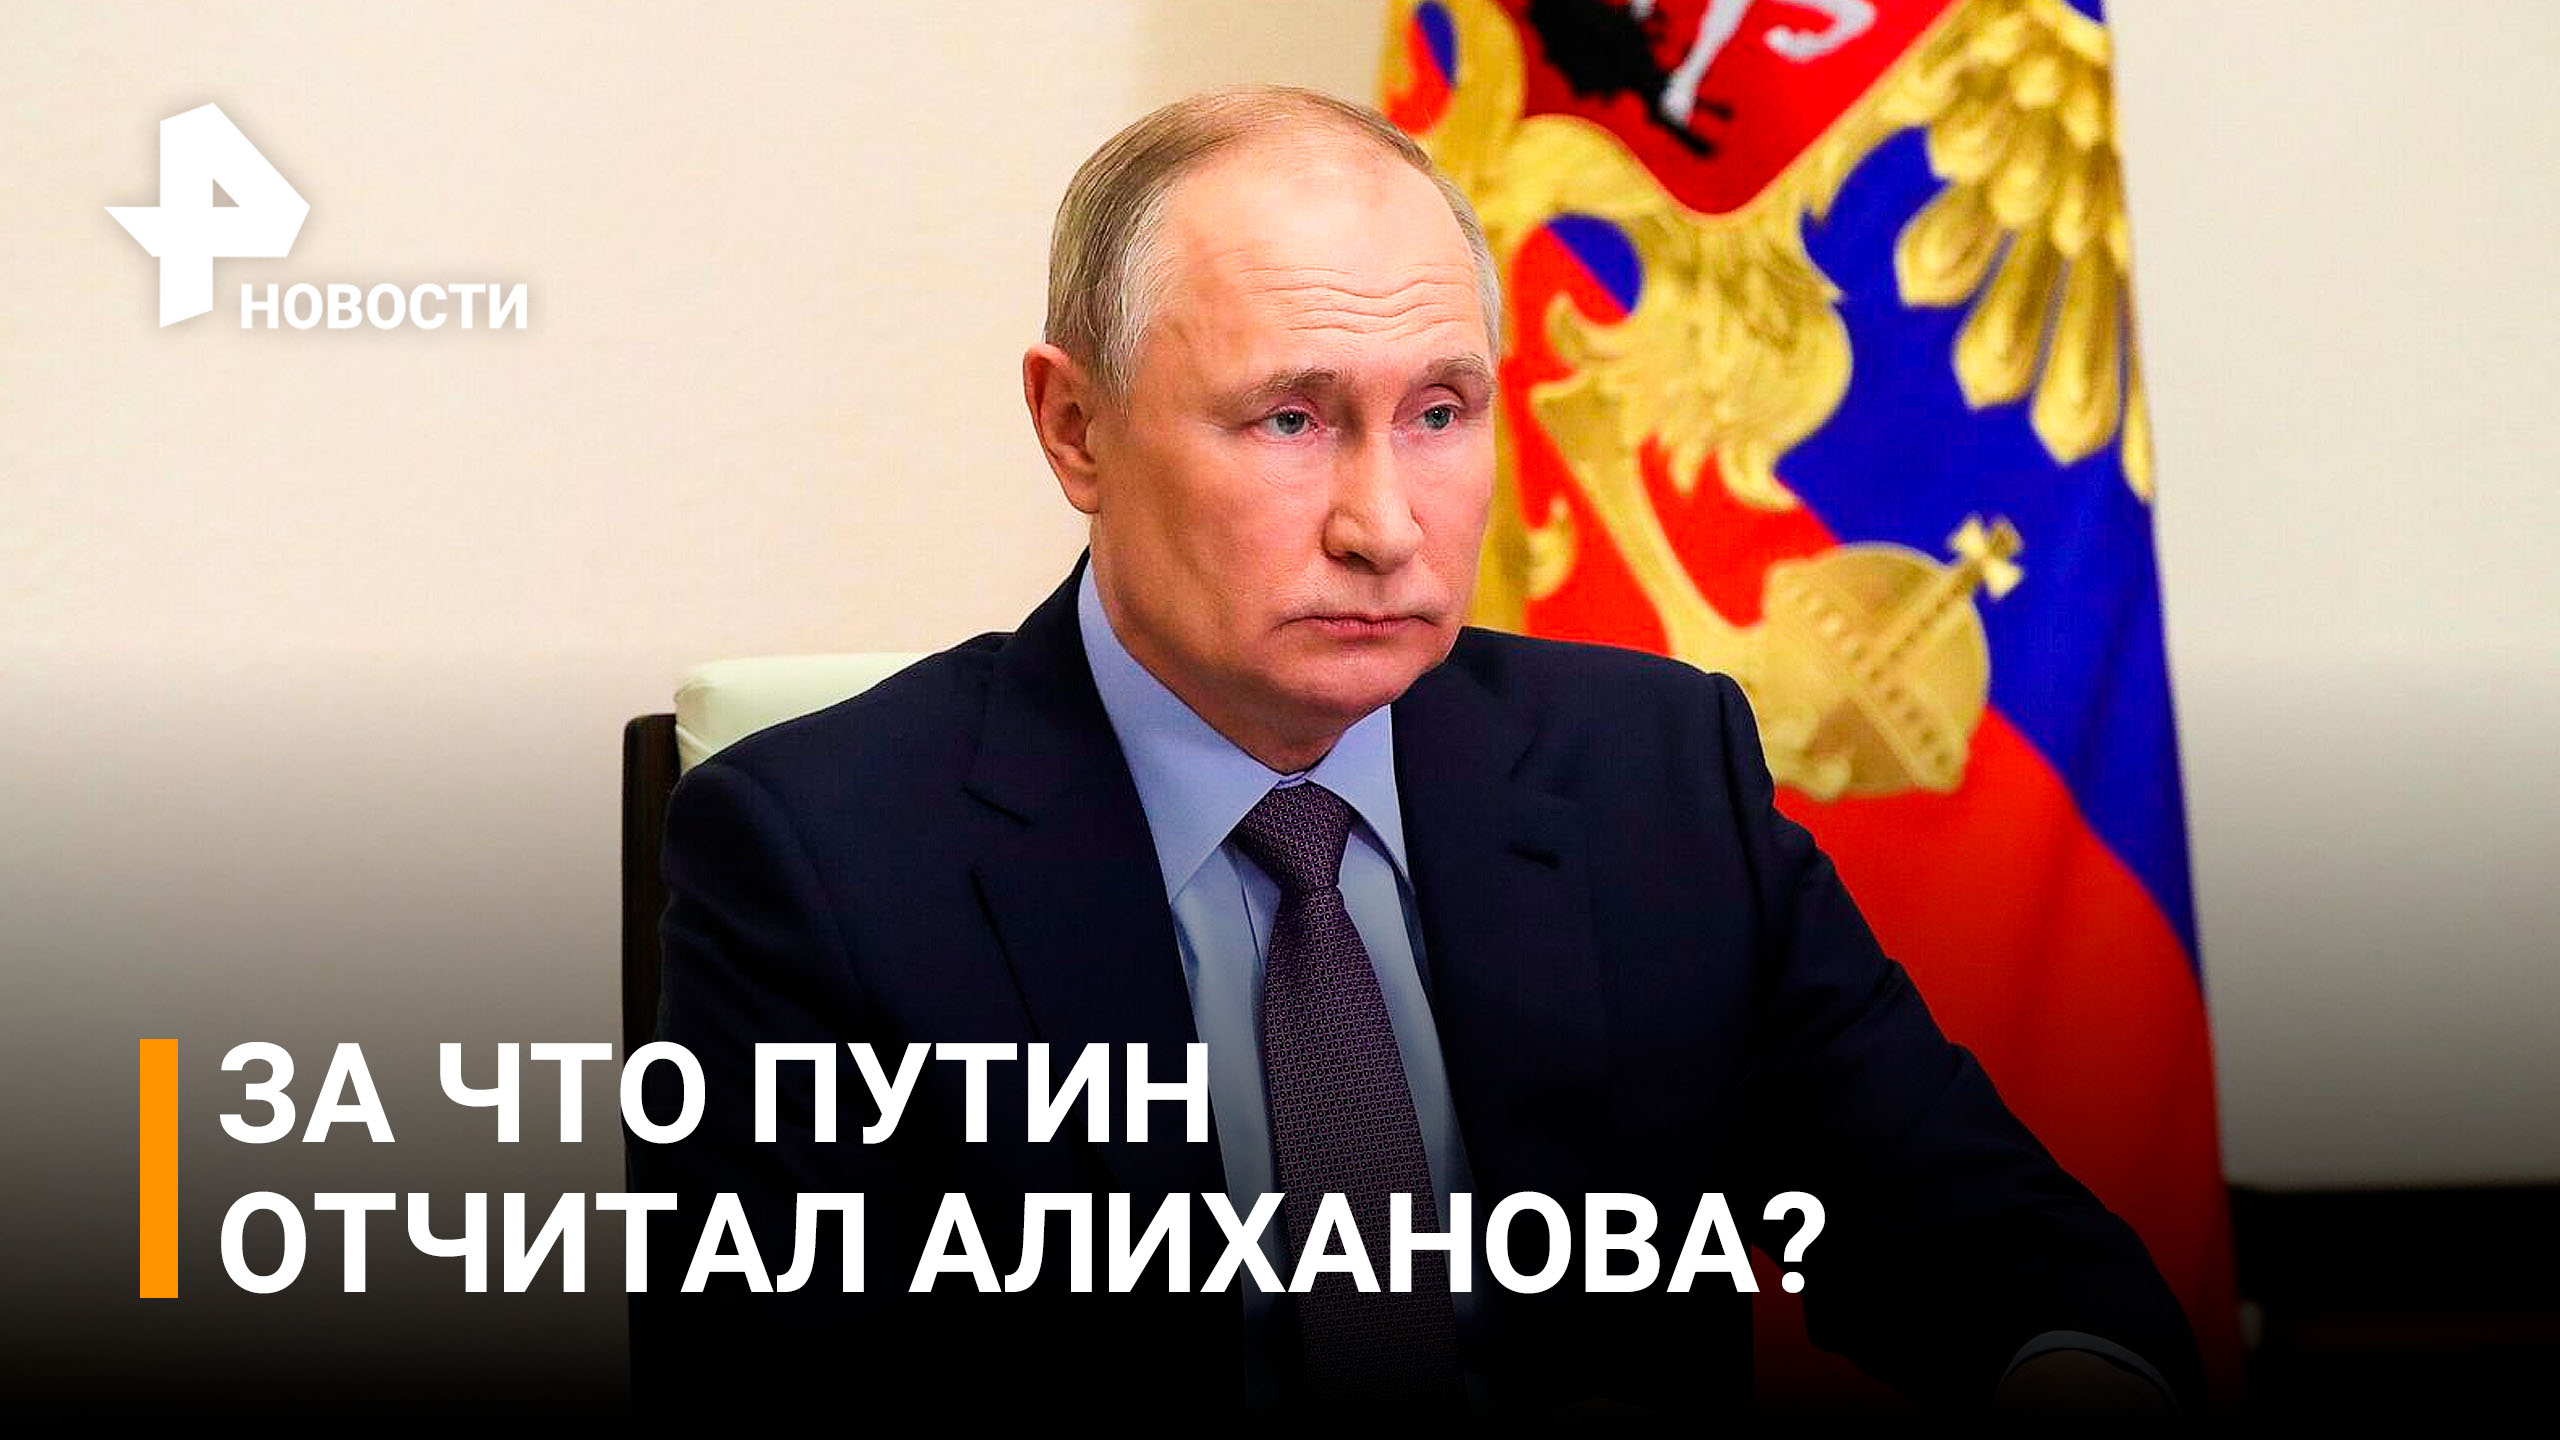 На нашу военную операцию не нужно ссылаться в этом случае: Путин отчитал Алиханова / РЕН Новости